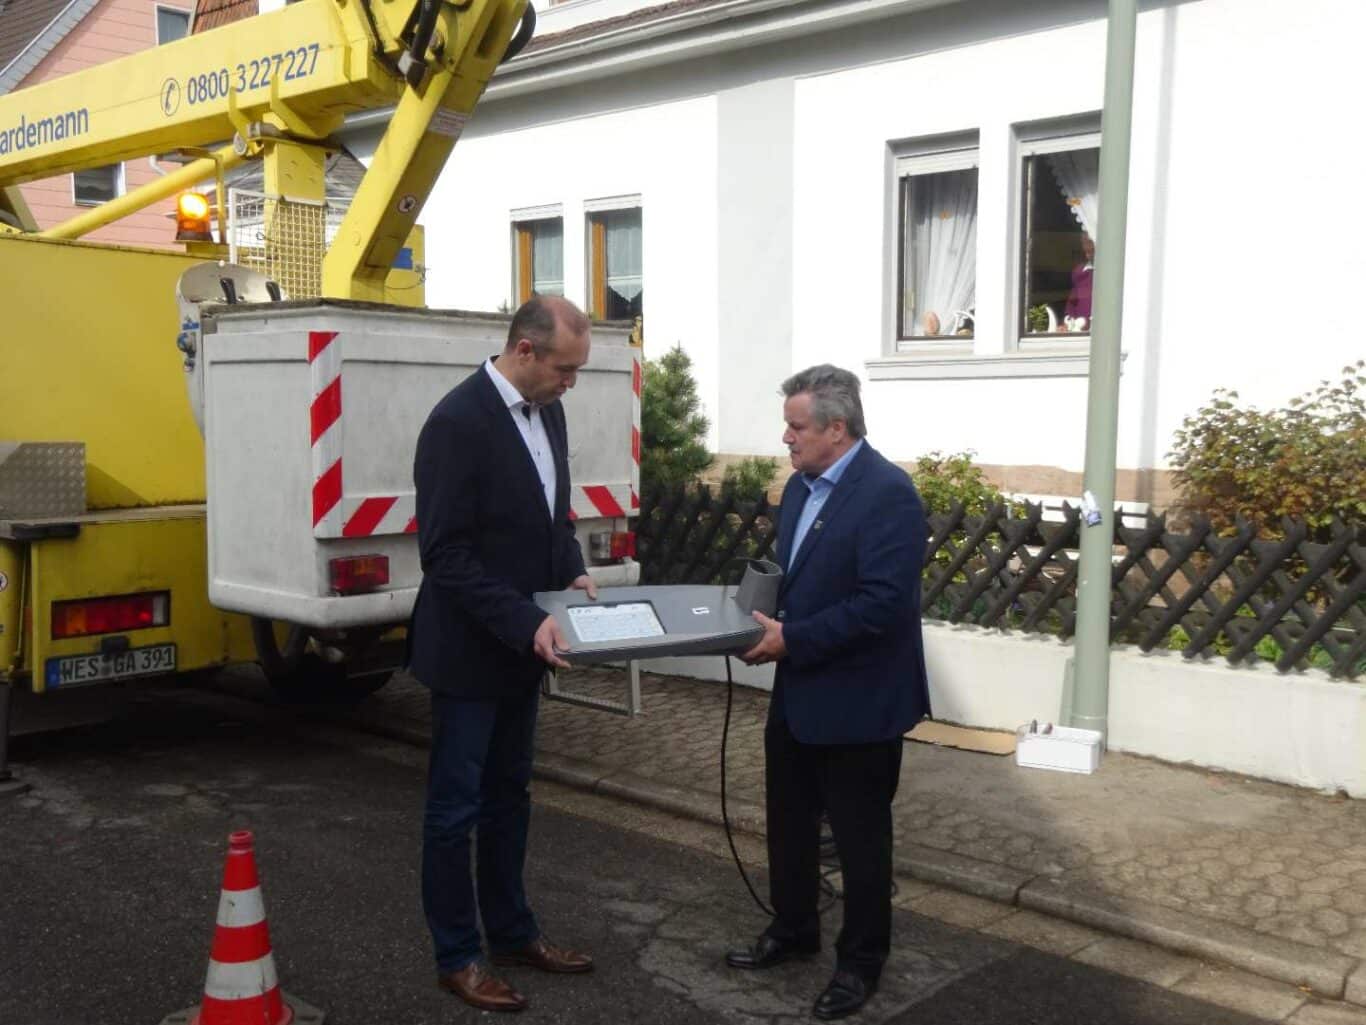 Bürgermeister Schultheis (rechts) sichtet die neuen Leuchtmittel | Bild: Stadt Friedrichsthal